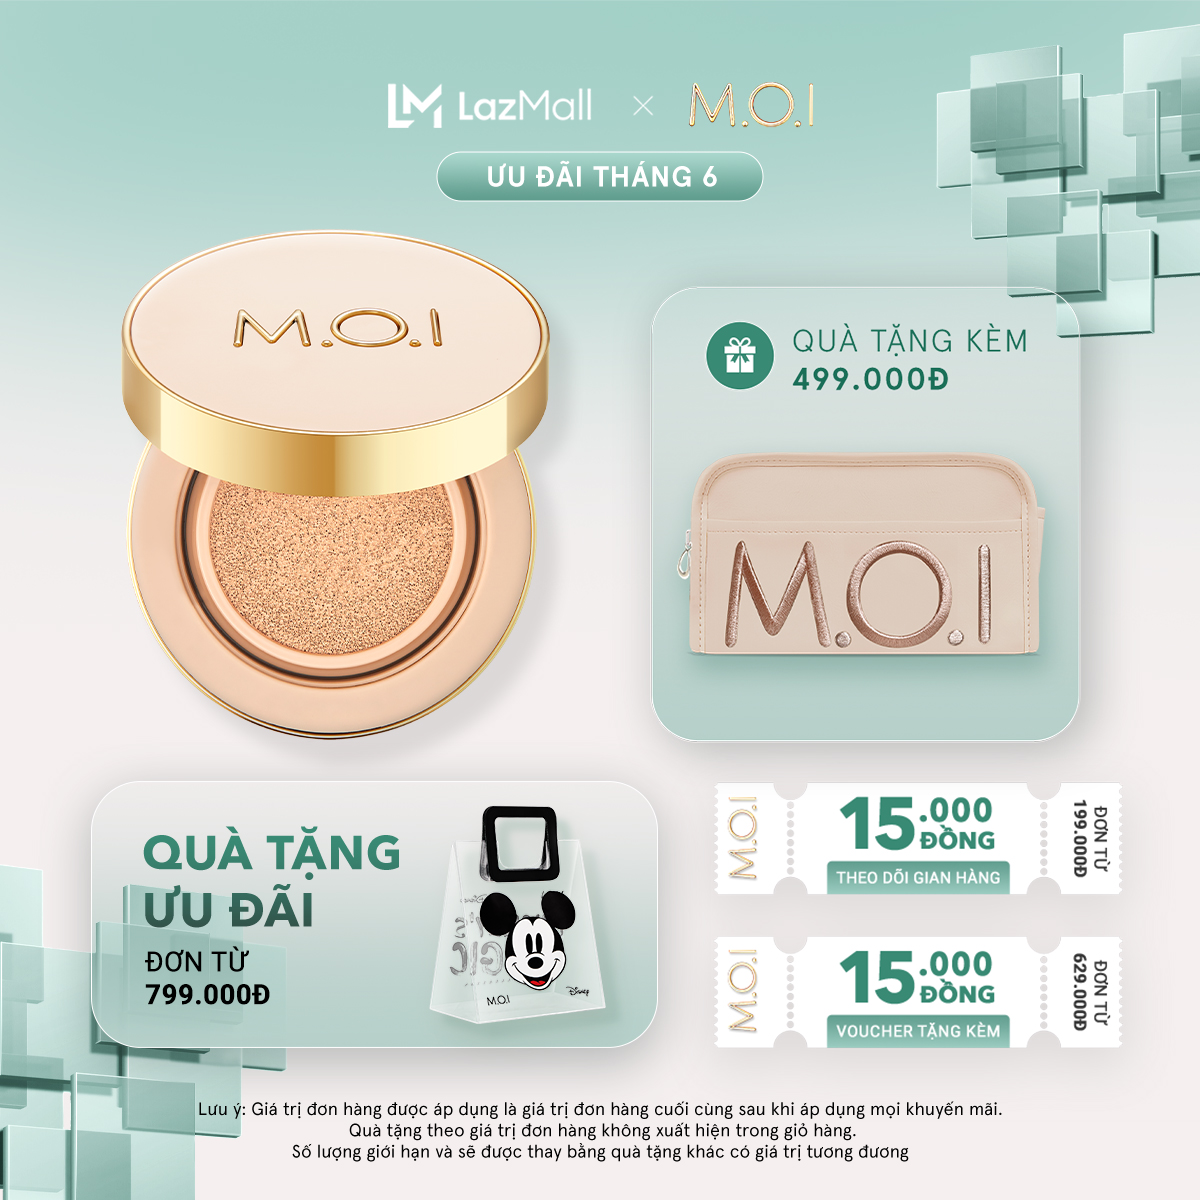 Phấn nước M.O.I Premium Edition Baby Skin Cushion Phiên bản cao cấp SPF 50+ PA+++ 12g